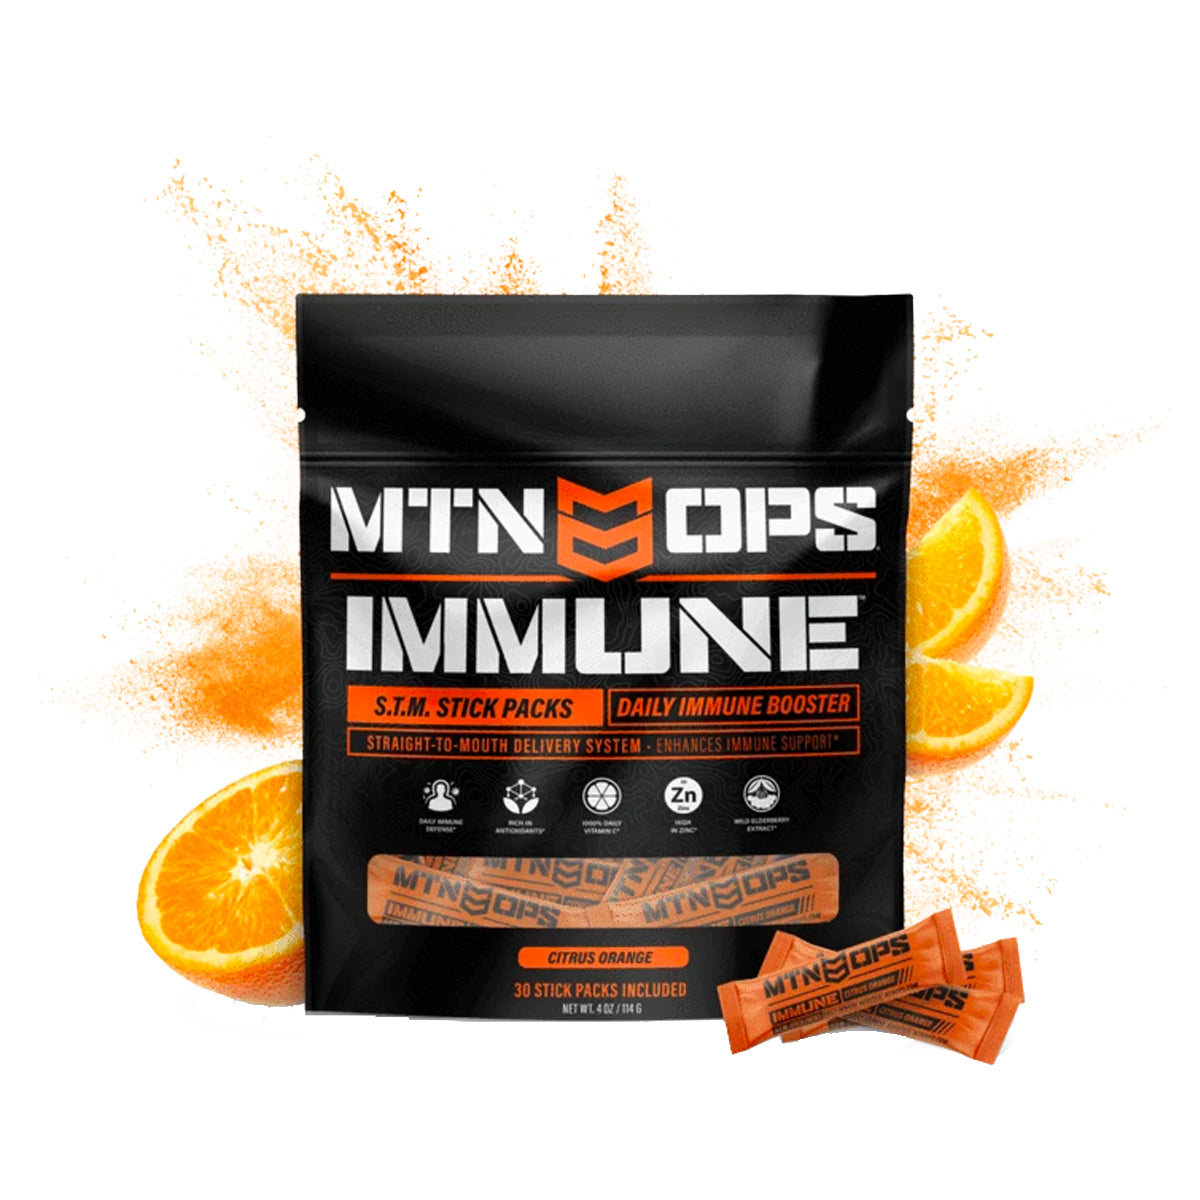 Mtn Ops Immune STM Stick Pack (Orange Citrus) in  by GOHUNT | Mtn Ops - GOHUNT Shop